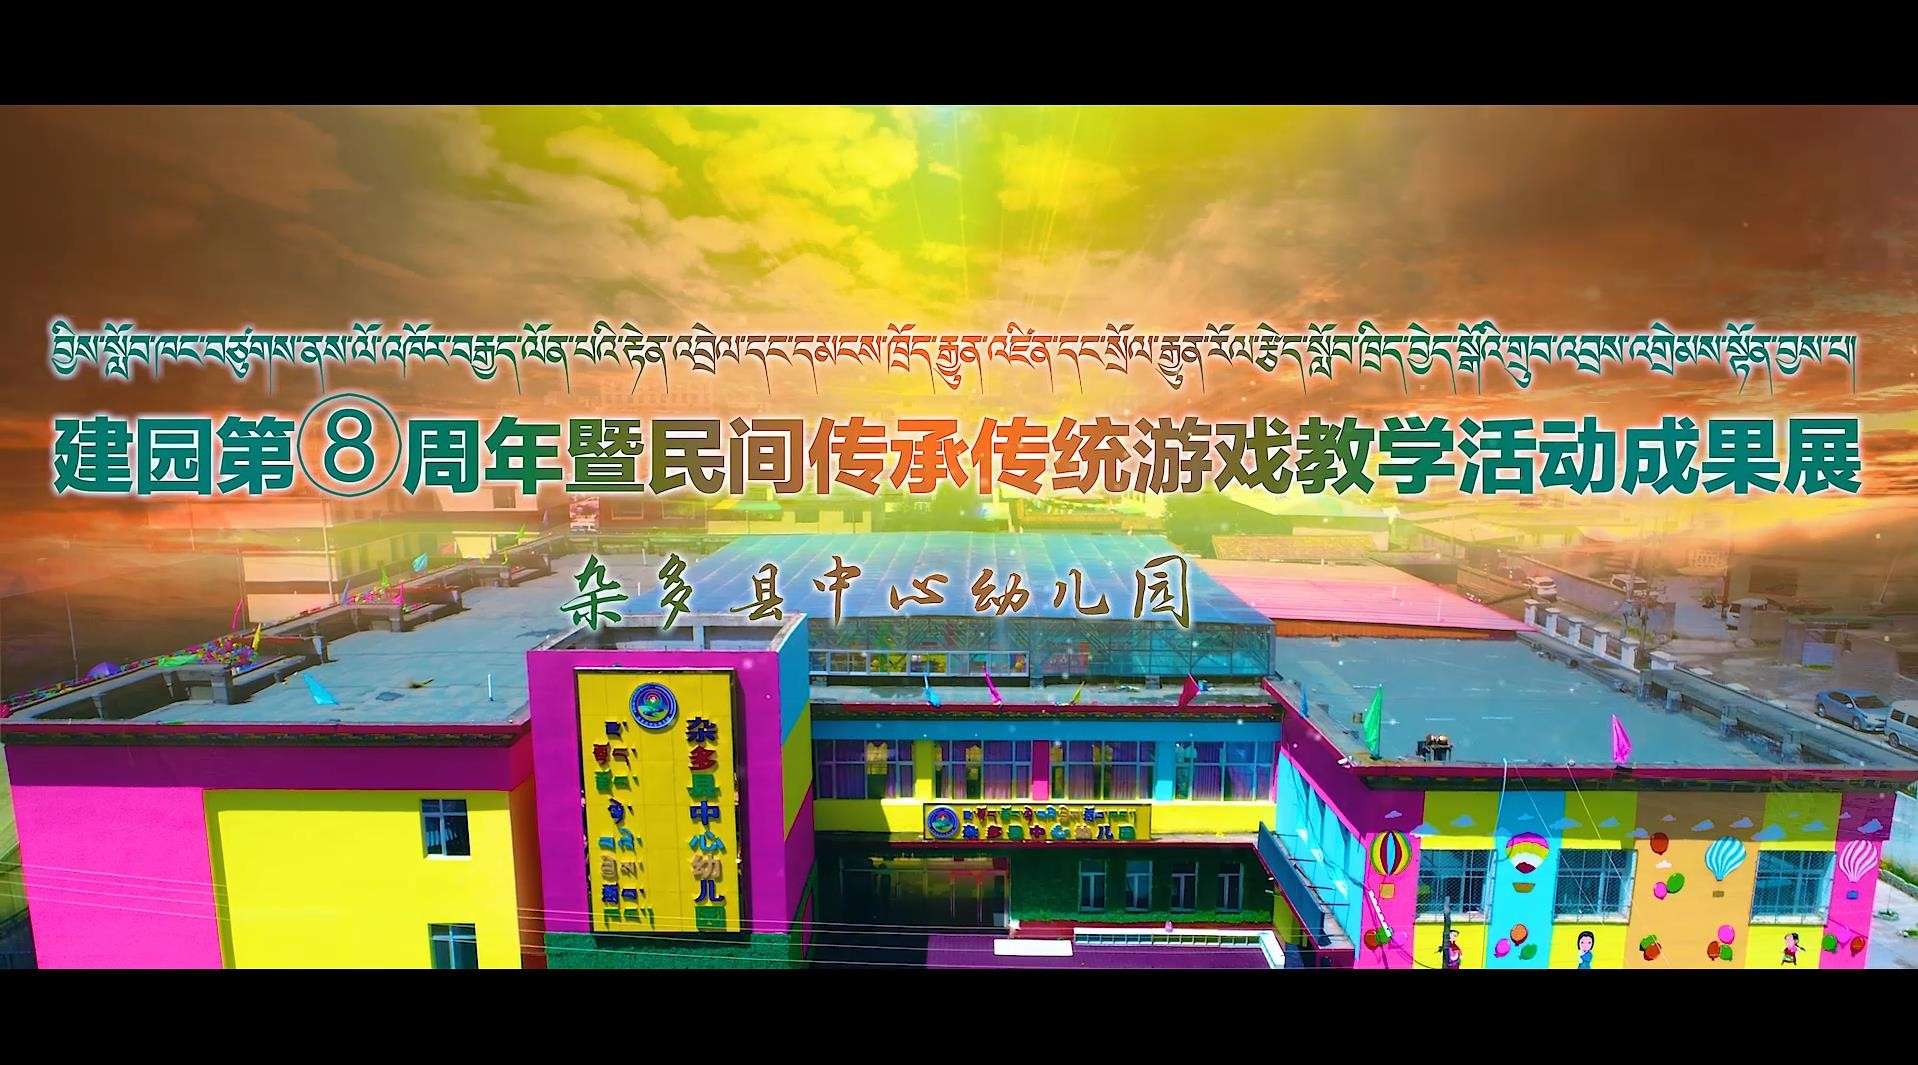 杂多县中心幼儿园建园第八周年暨民间传承传统游戏教学活动成果展